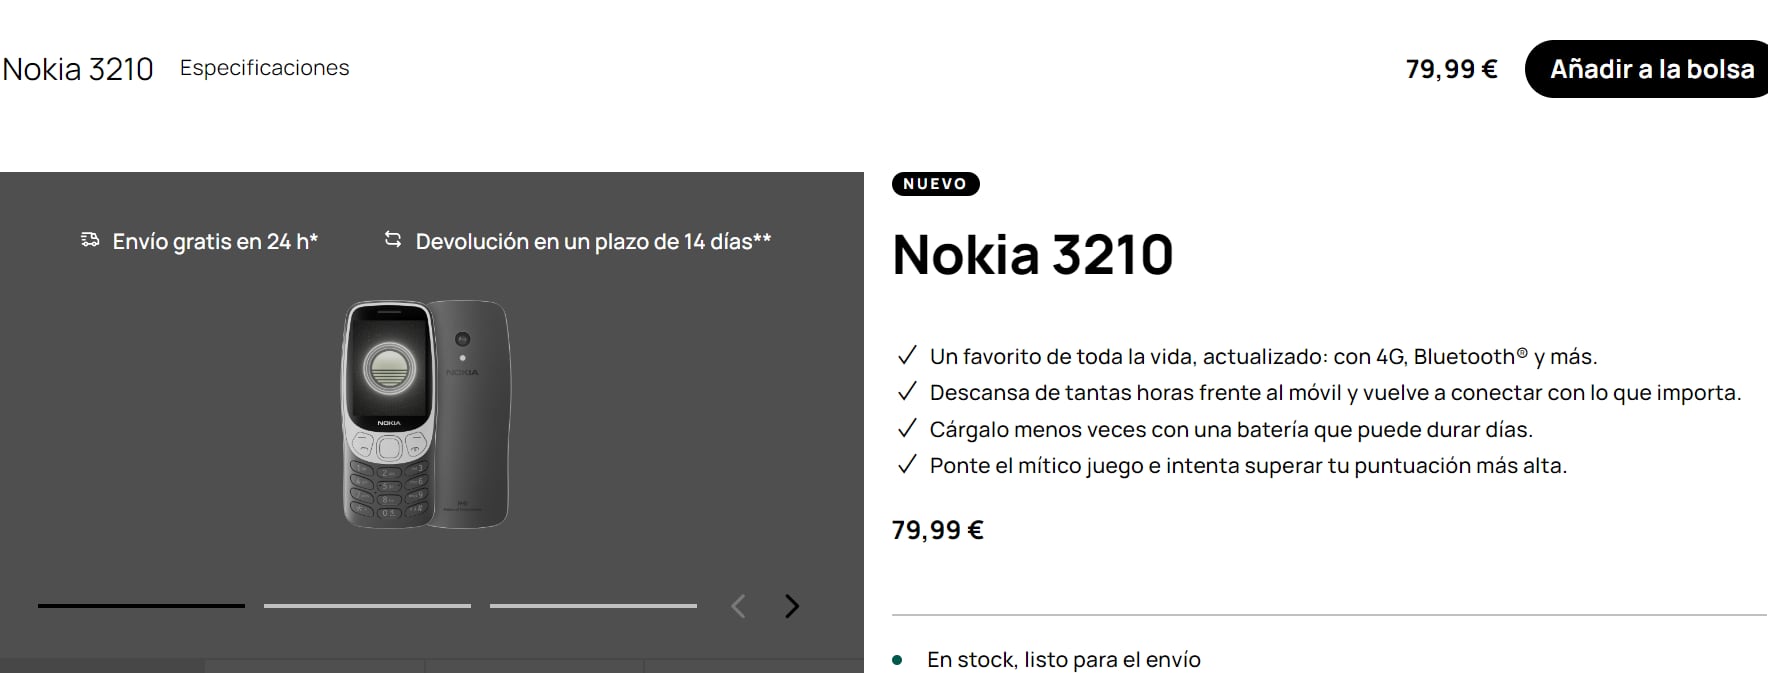 El nuevo Nokia 3210 está disponible en tres colores diferentes. (HMD)